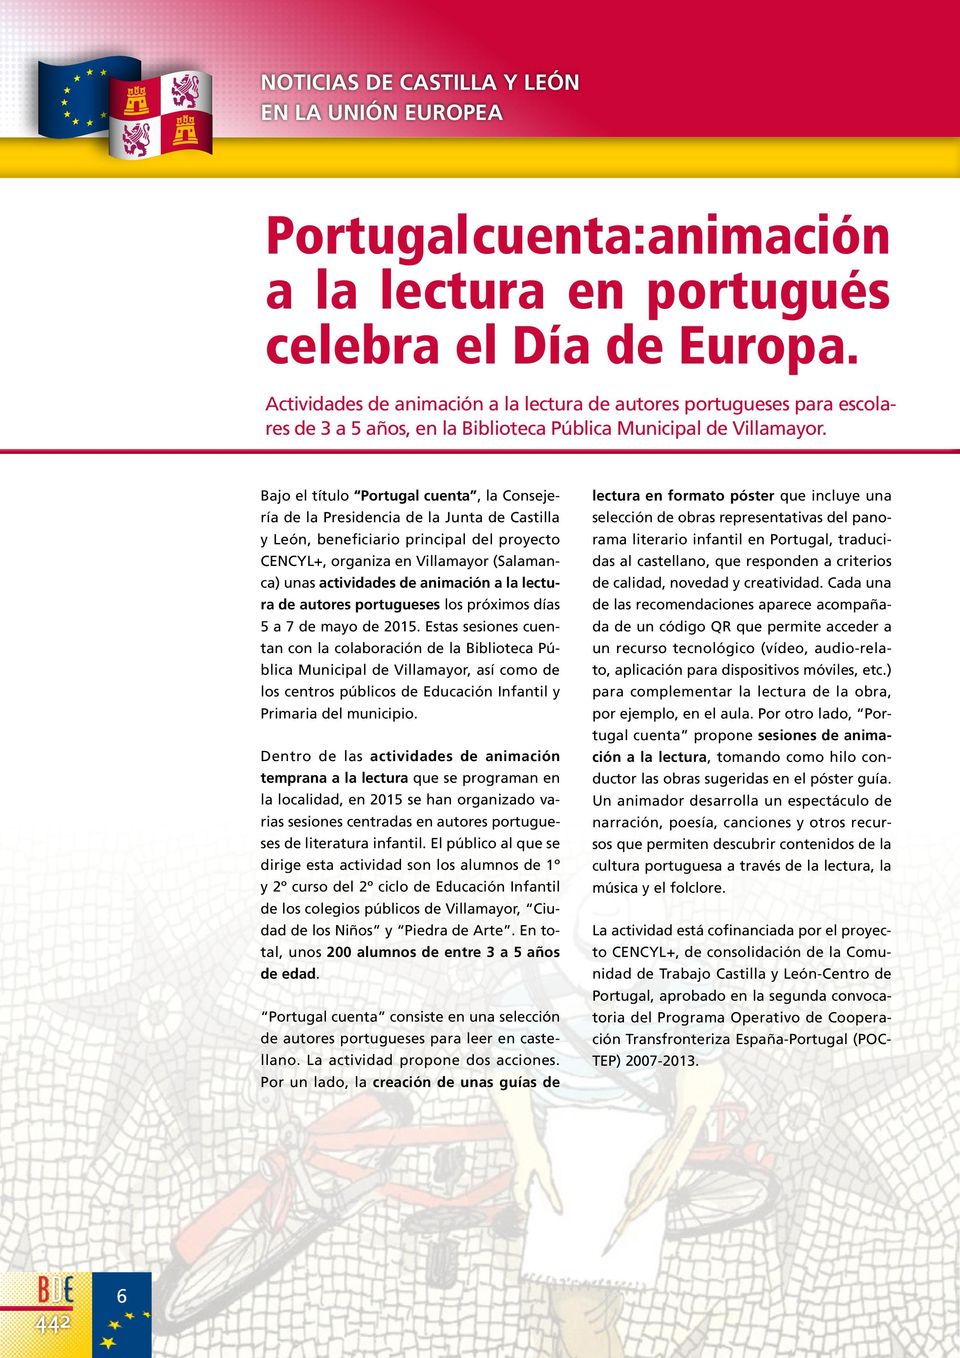 Bajo el título Portugal cuenta, la Consejería de la Presidencia de la Junta de Castilla y León, beneficiario principal del proyecto CENCYL+, organiza en Villamayor (Salamanca) unas actividades de